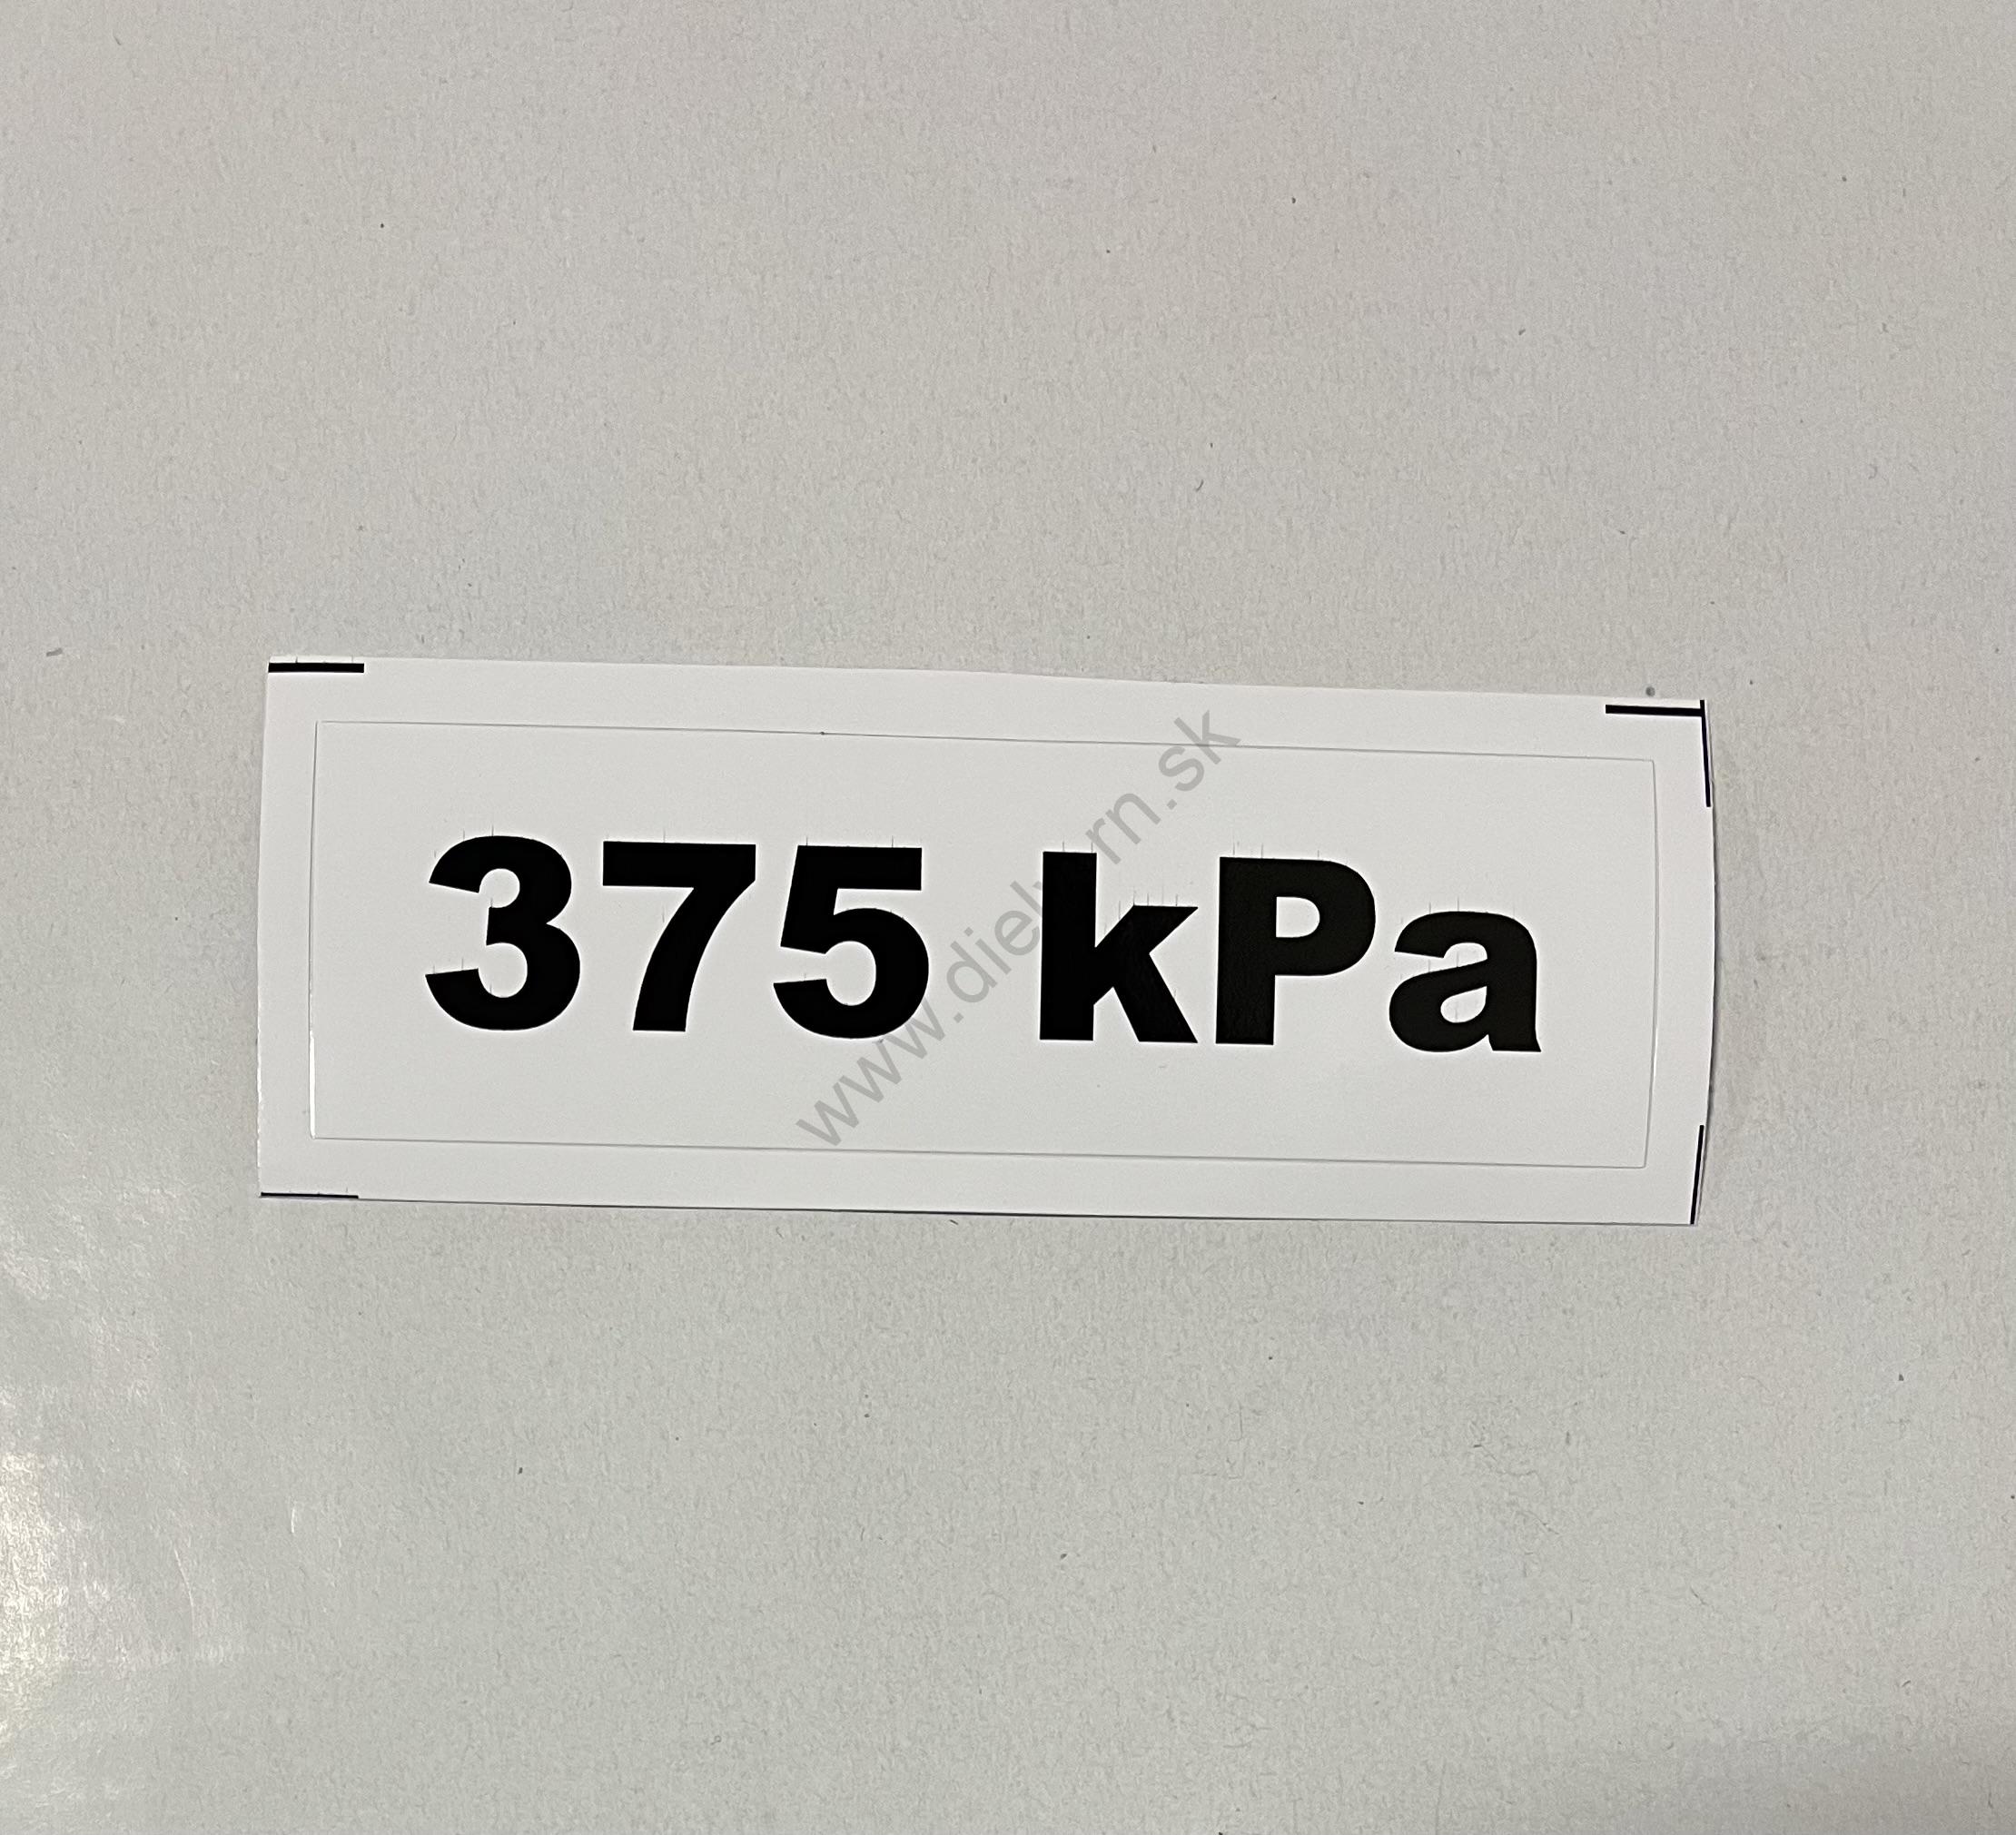 Označenie kPa 375